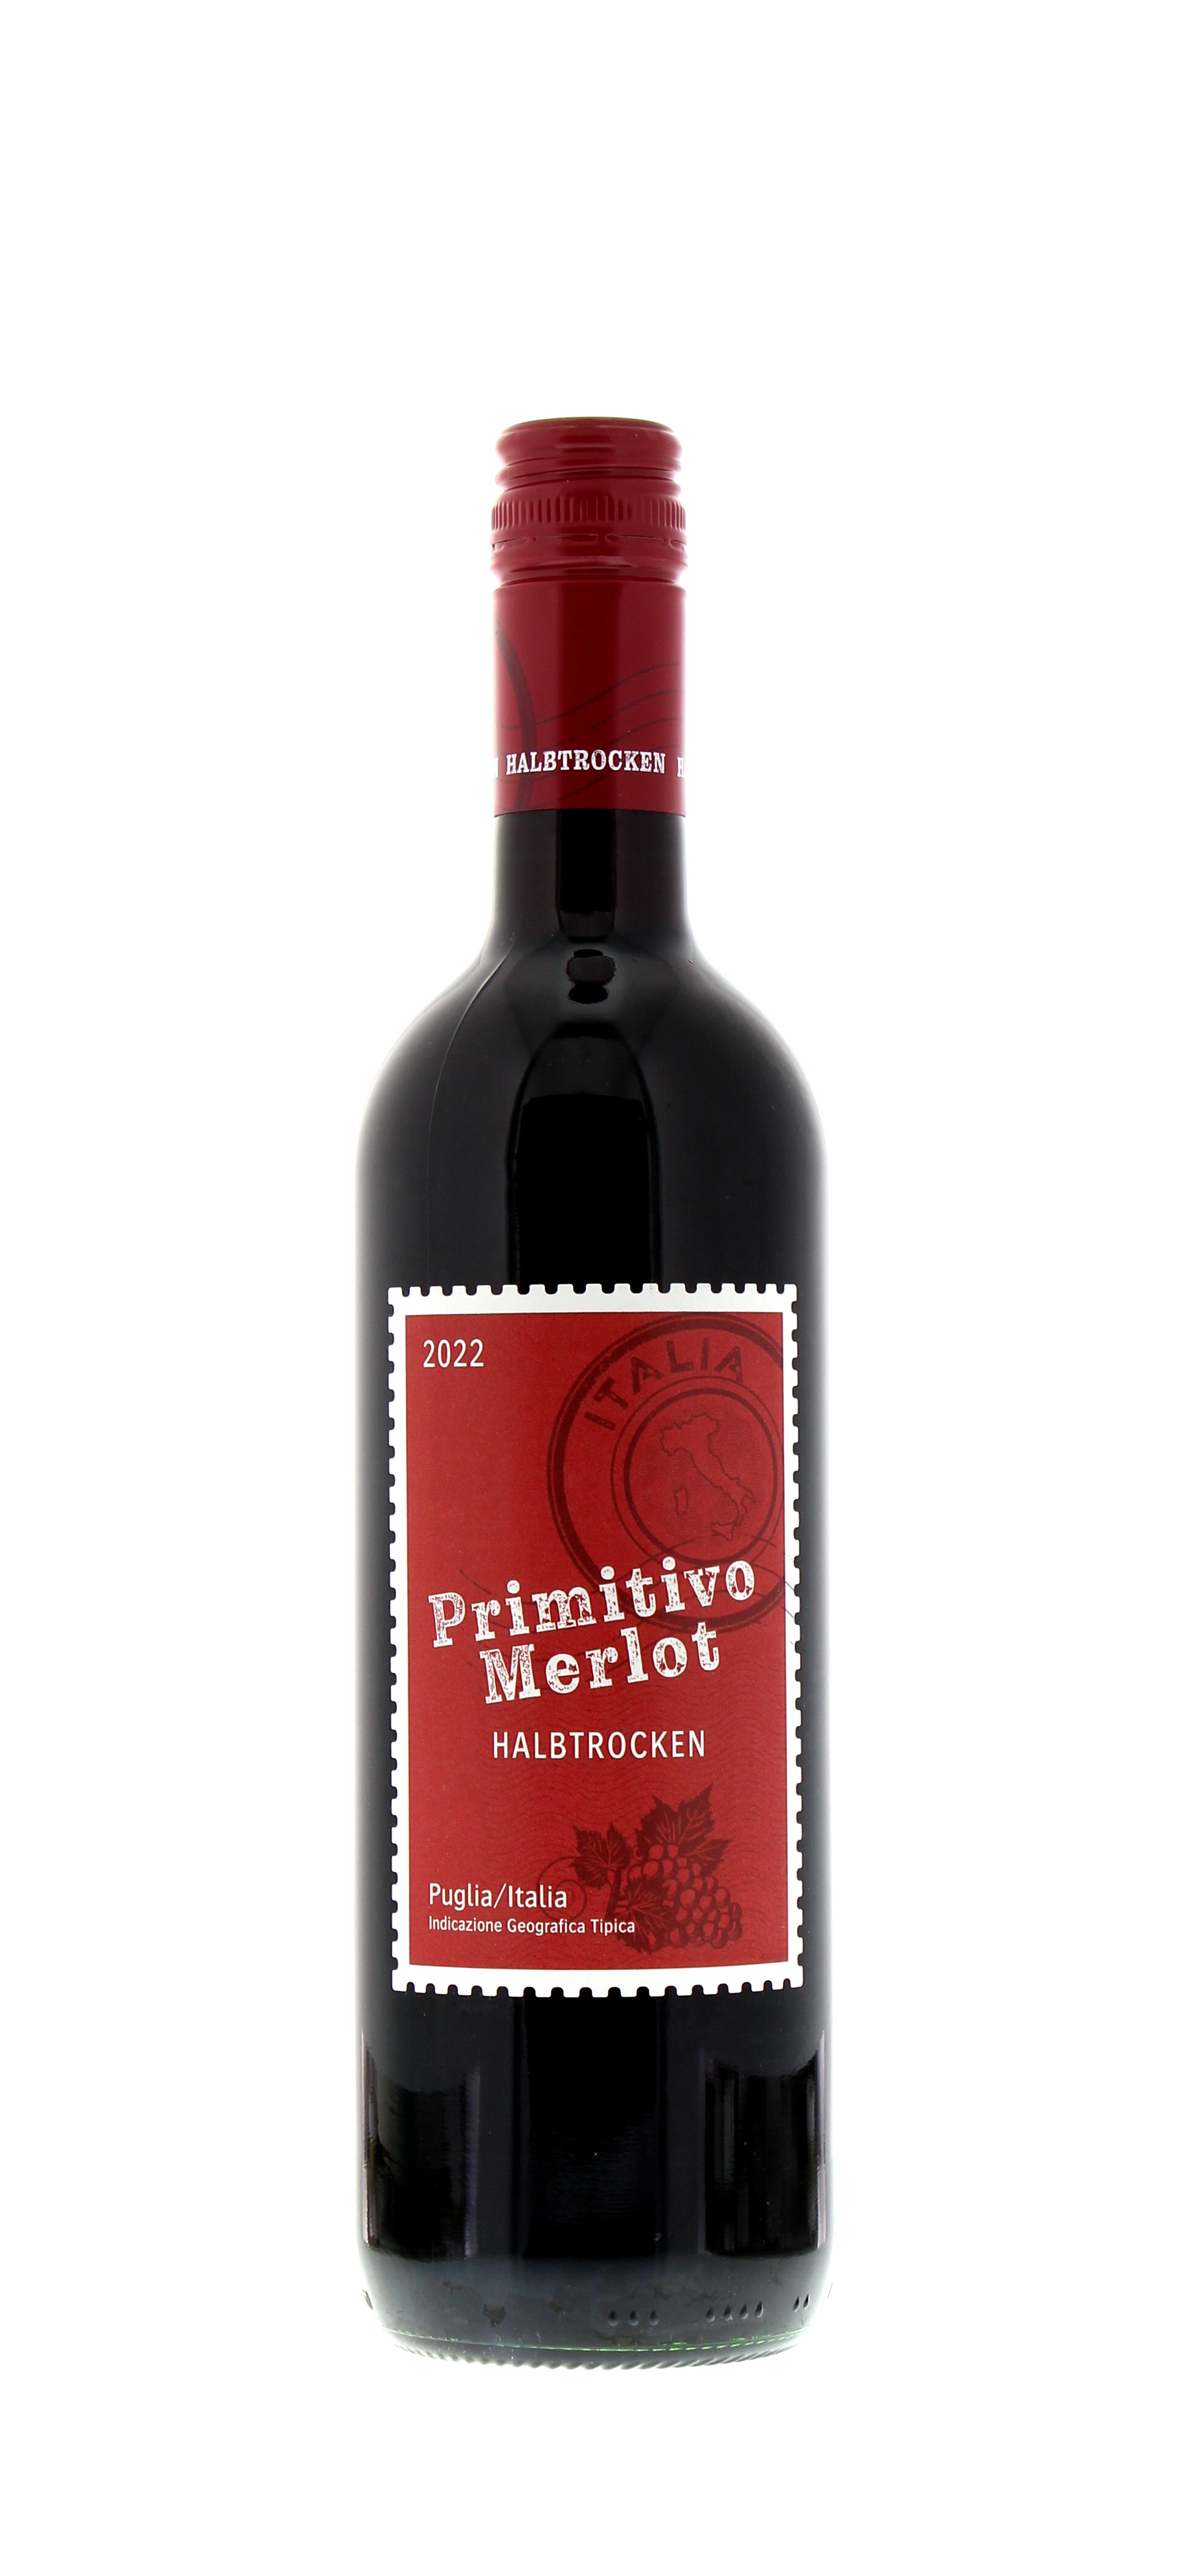 2022 Italien Puglia Primitivo Merlot IGT halbtrocken 0,75 l Flasche - PENNY  Mobile Wein-App